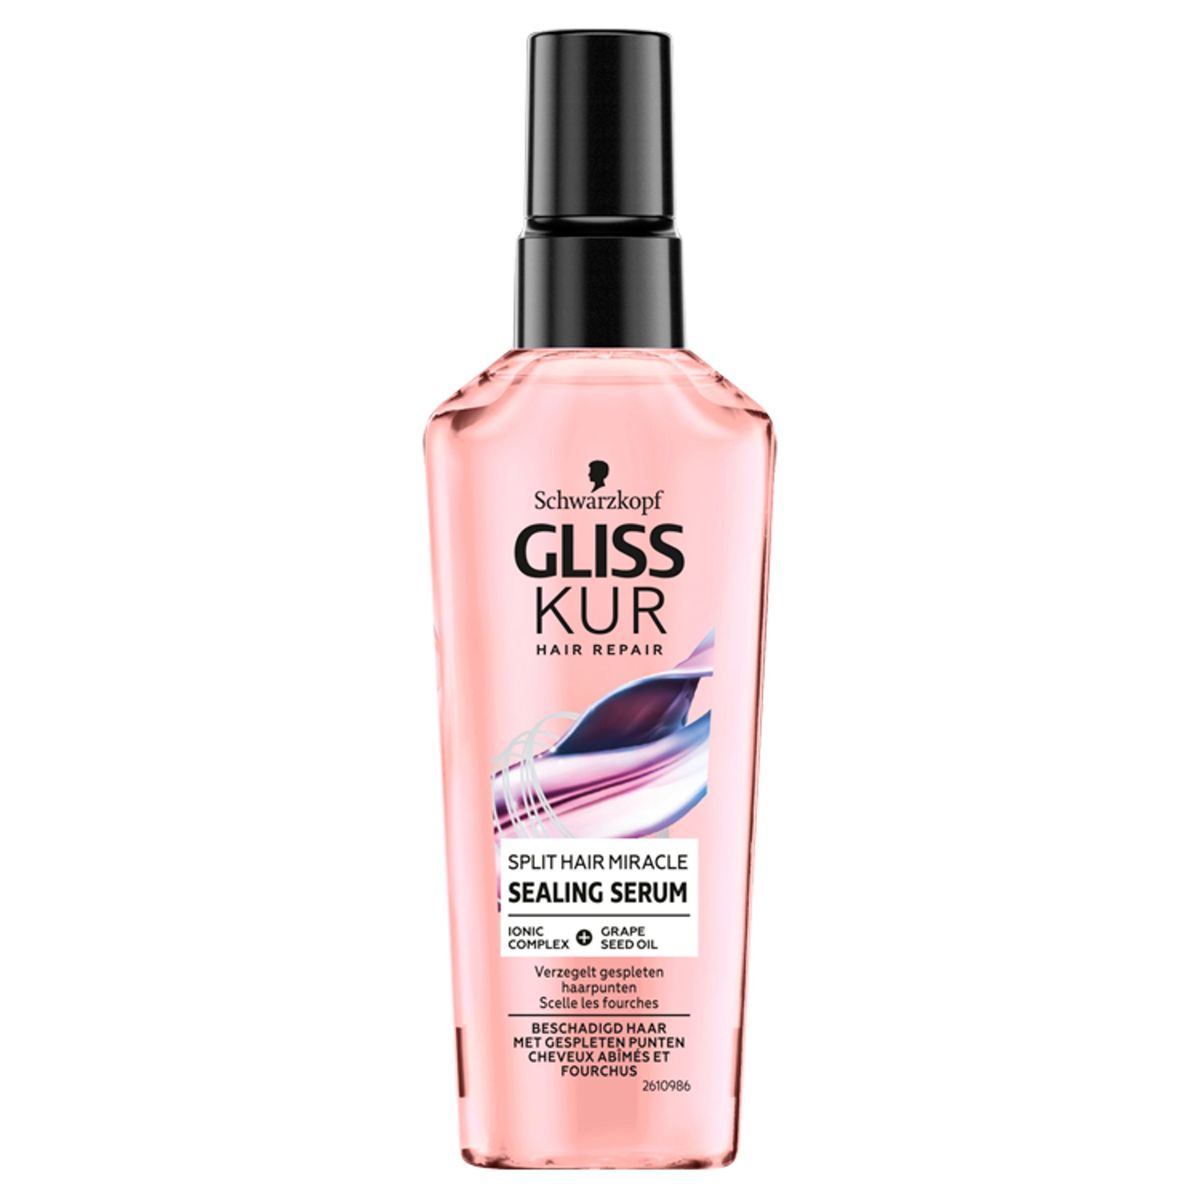 Gliss Kur Split Hair Miracle Sealing Serum 75 ml